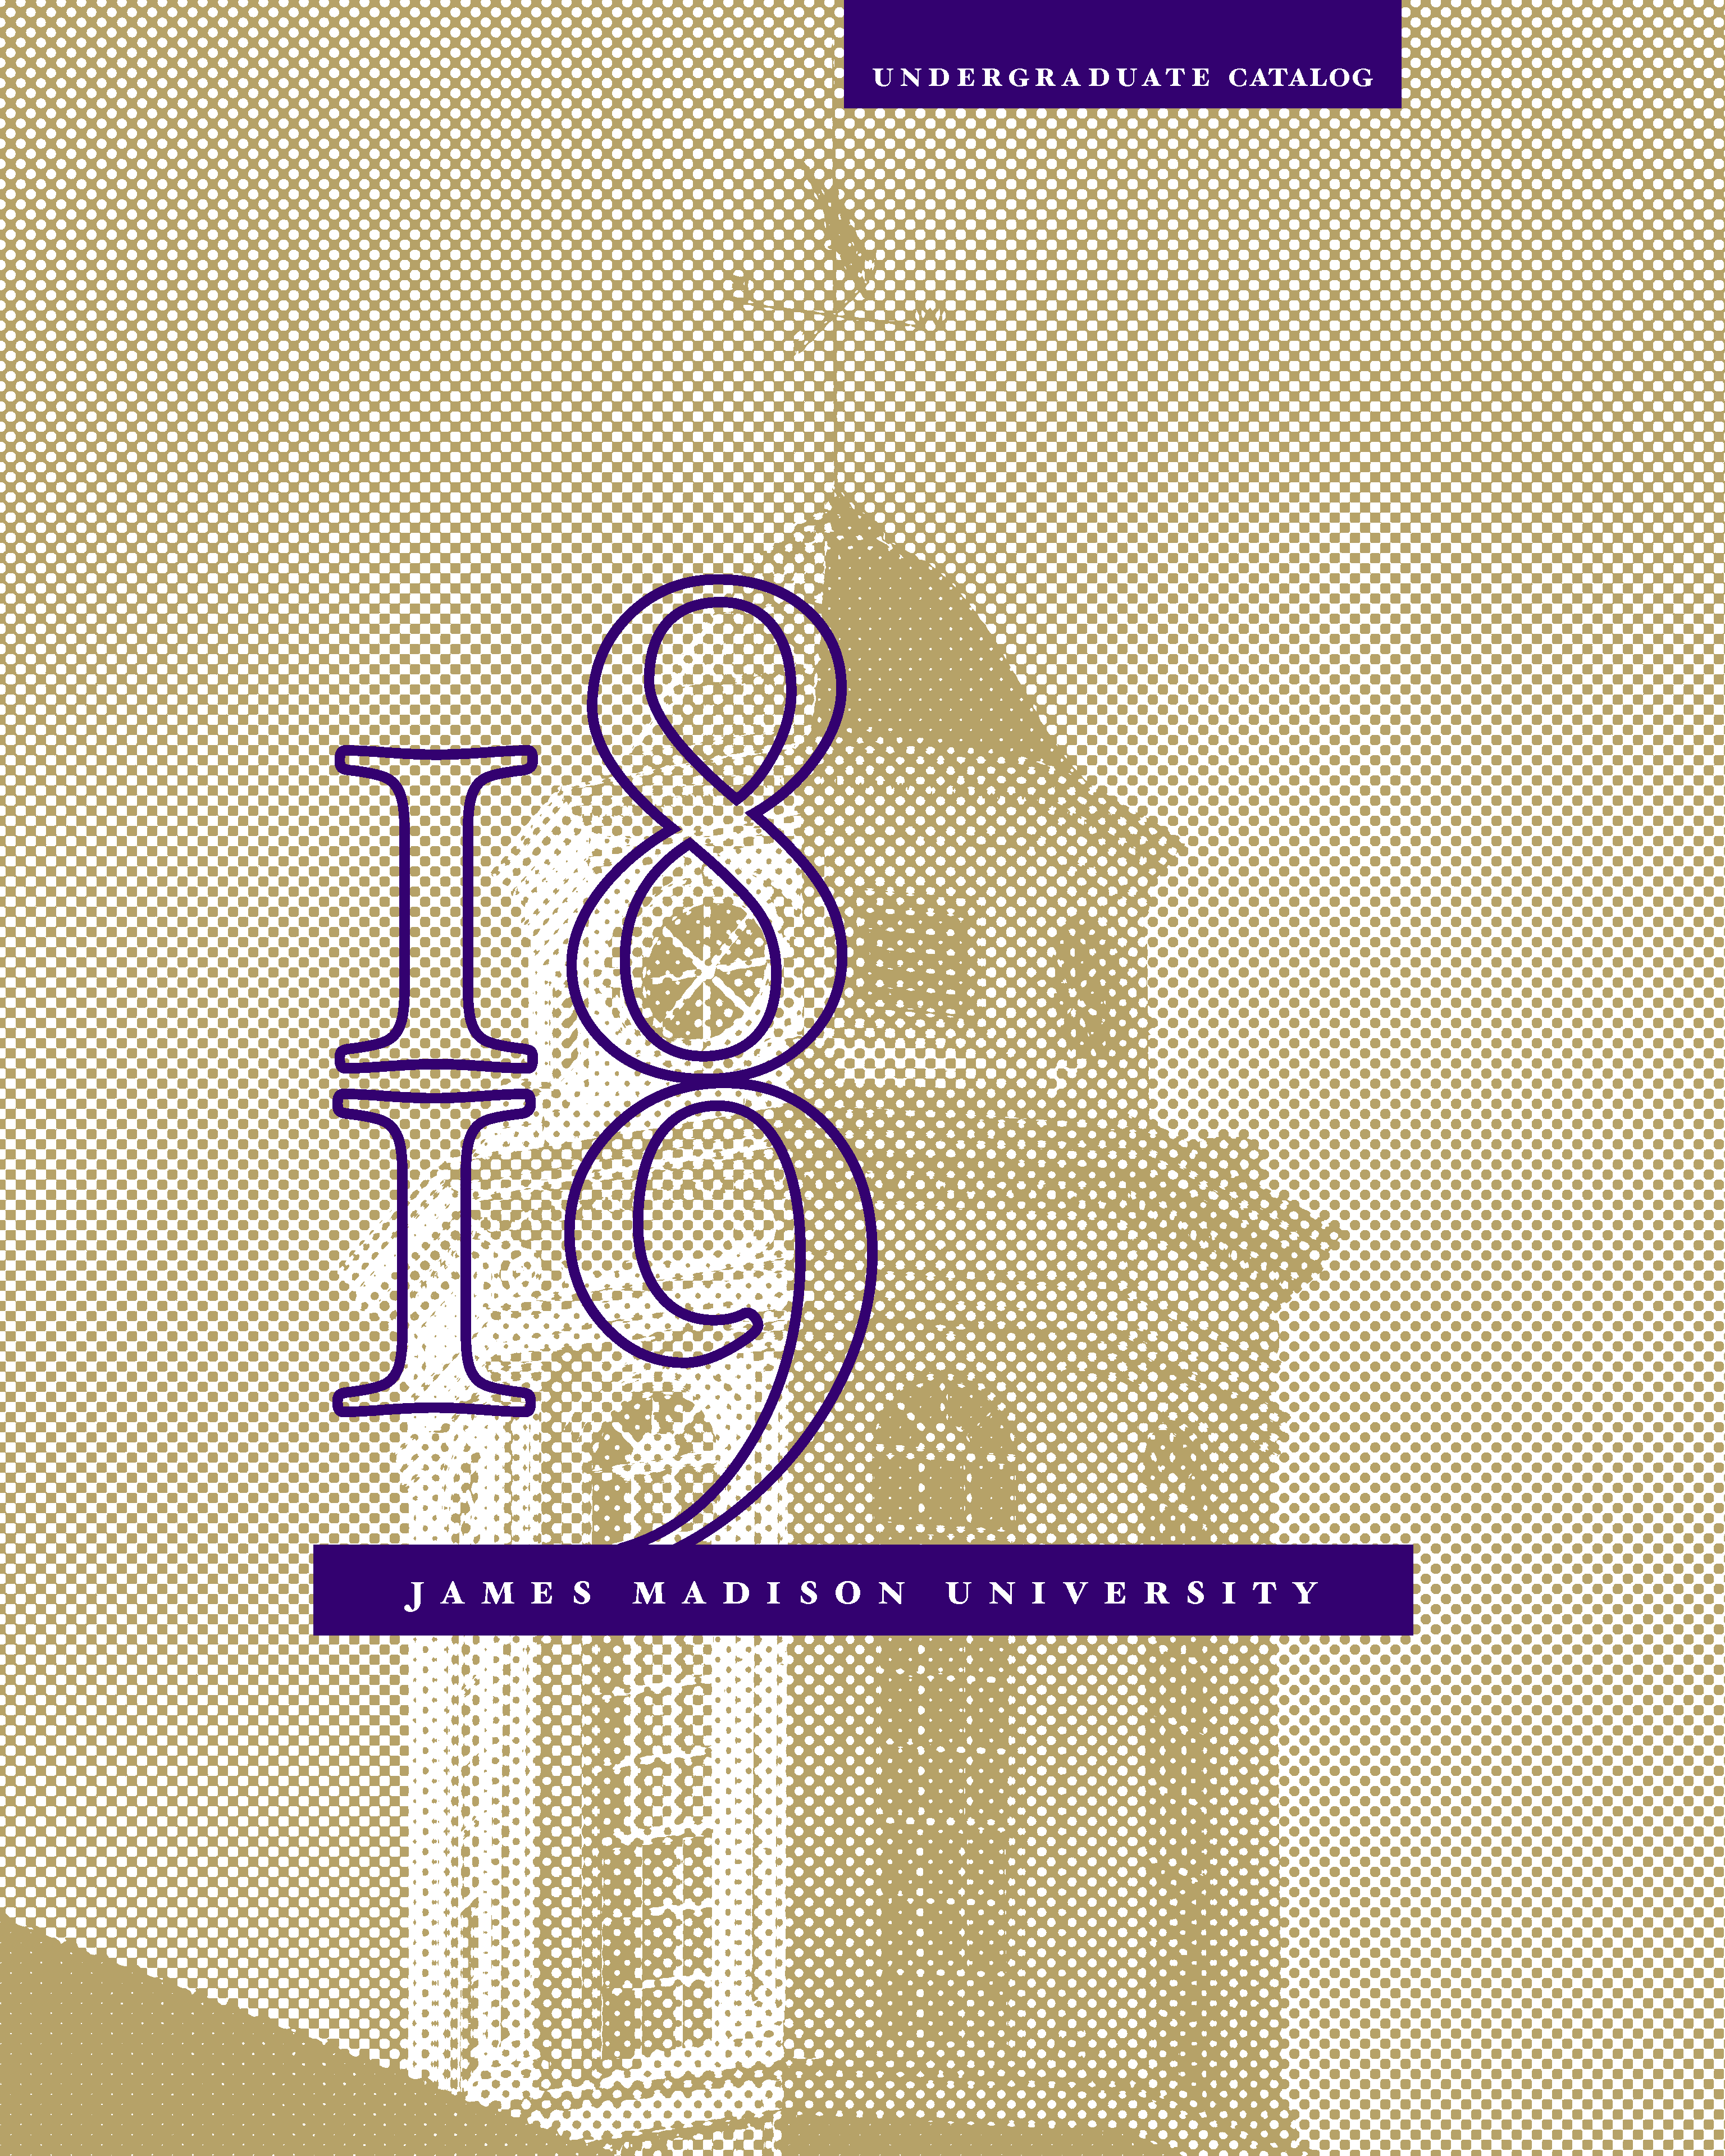 2018-2019 Undergraduate Catalog Cover